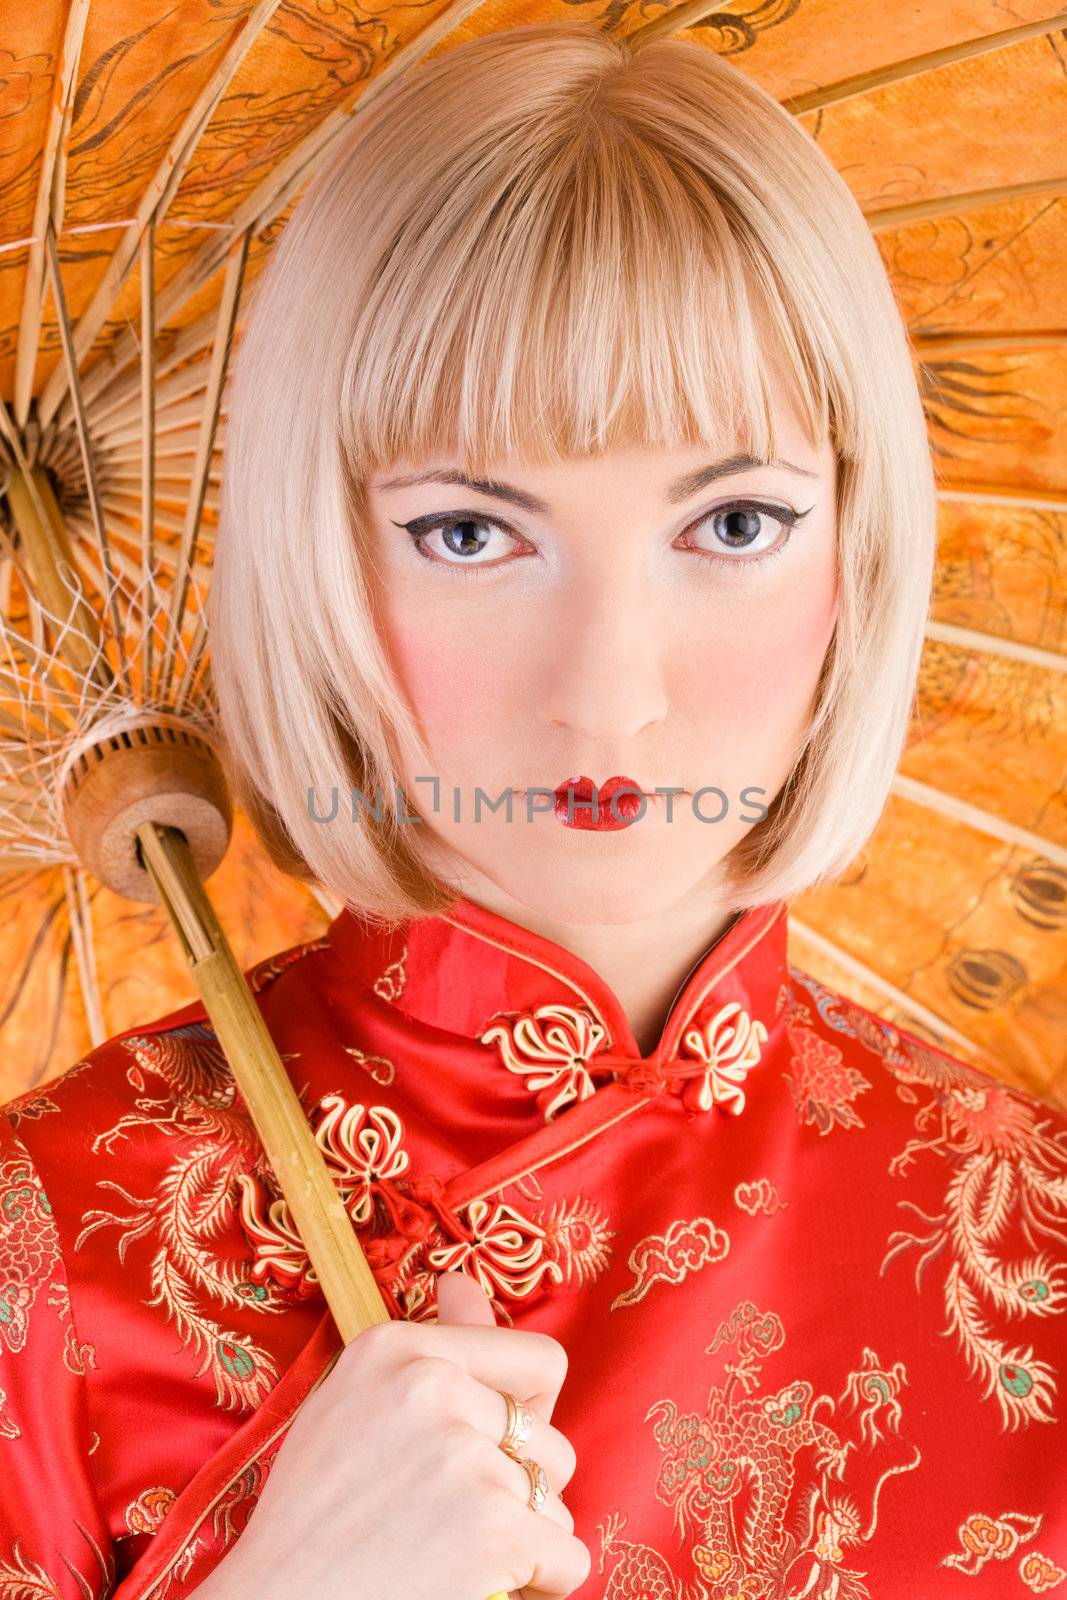 Geisha makeup on a pretty young girl